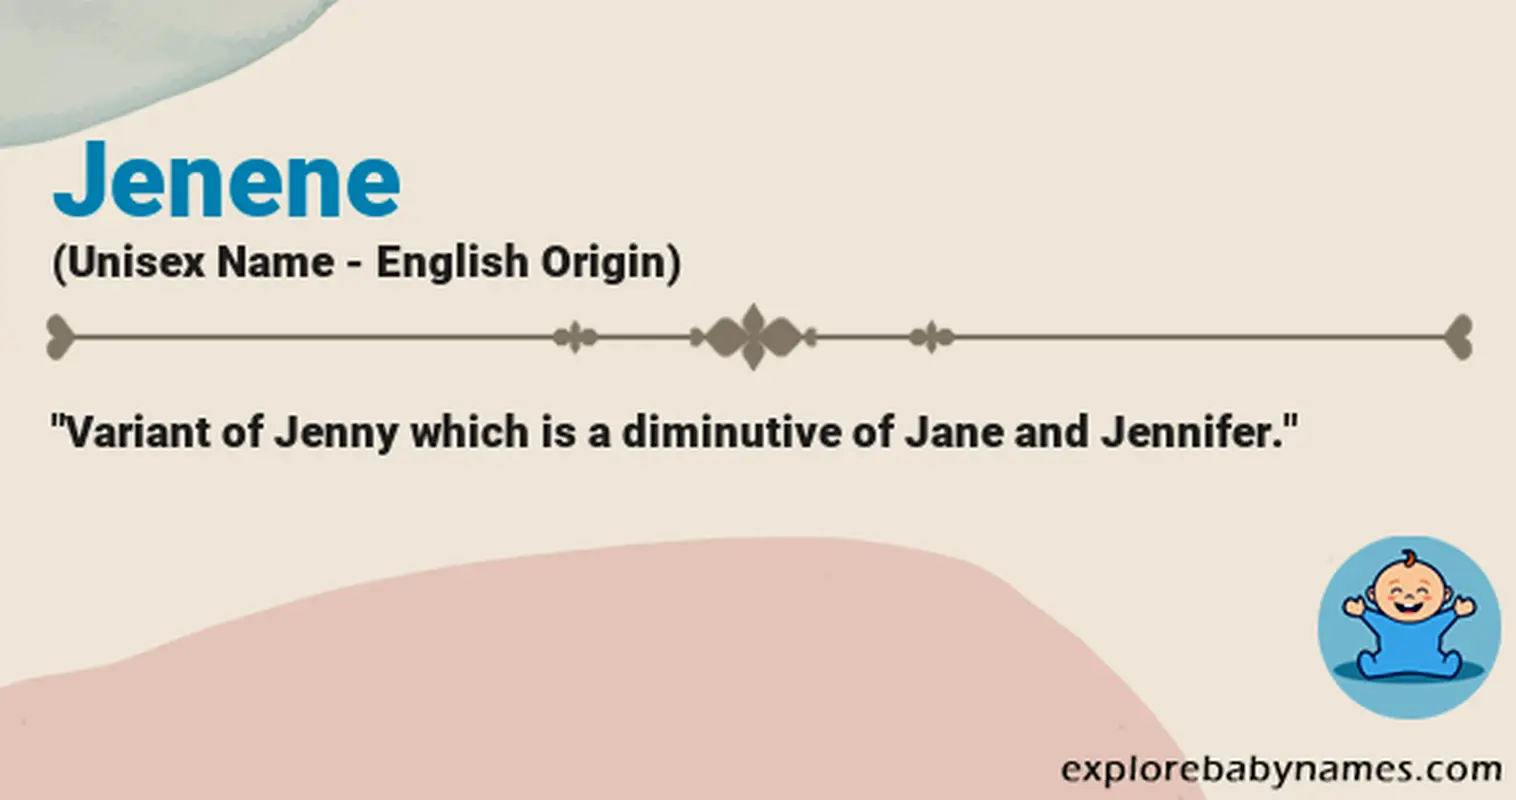 Meaning of Jenene